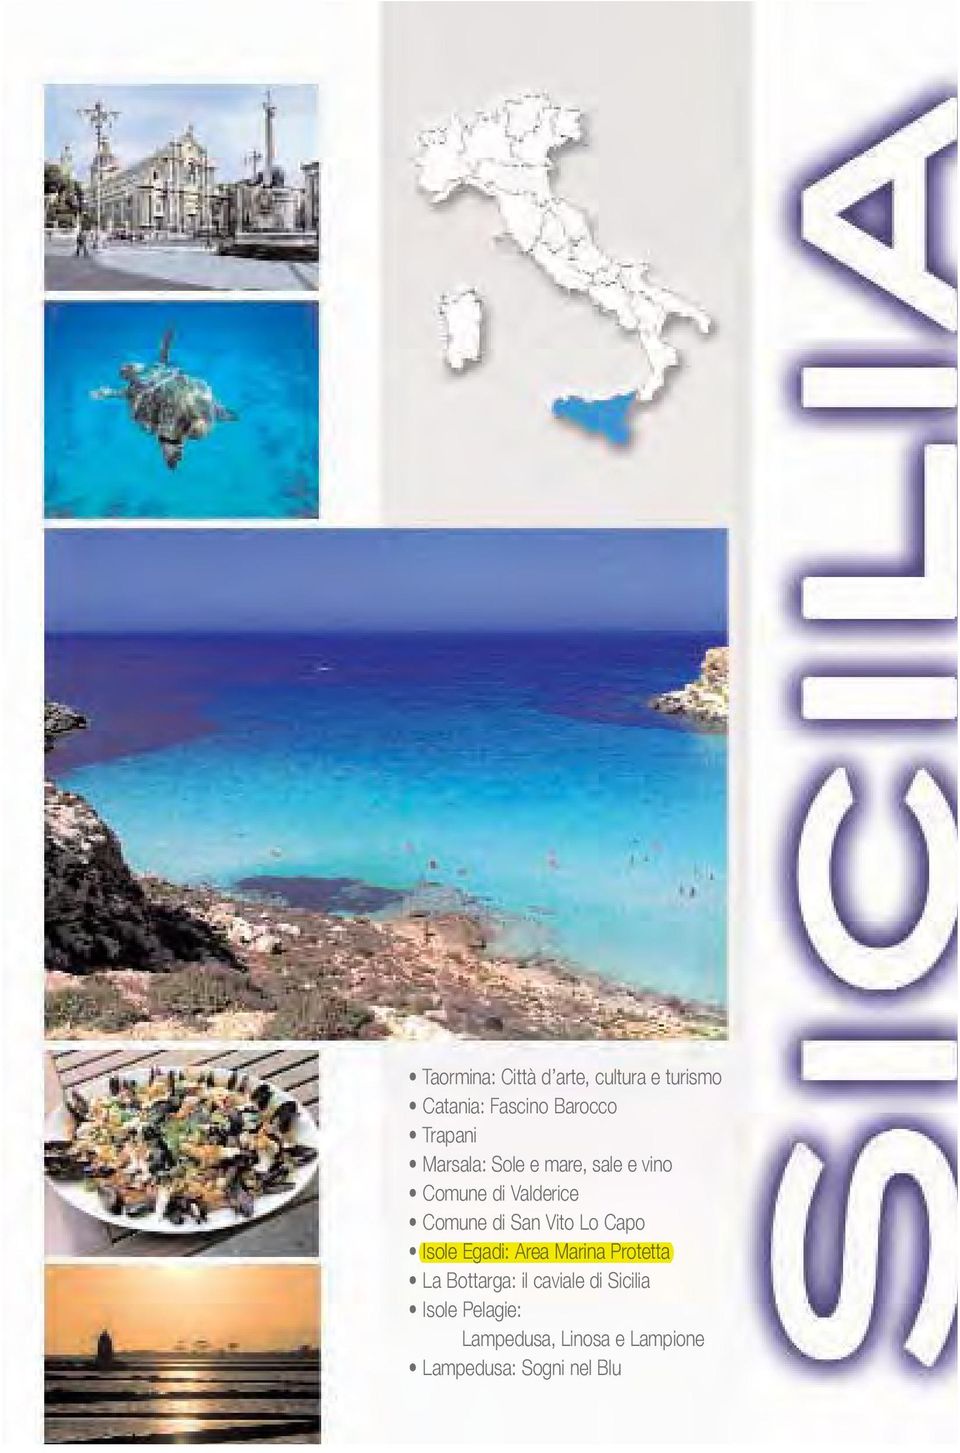 San Vito Lo Capo Isole Egadi: Area Marina Protetta La Bottarga: il